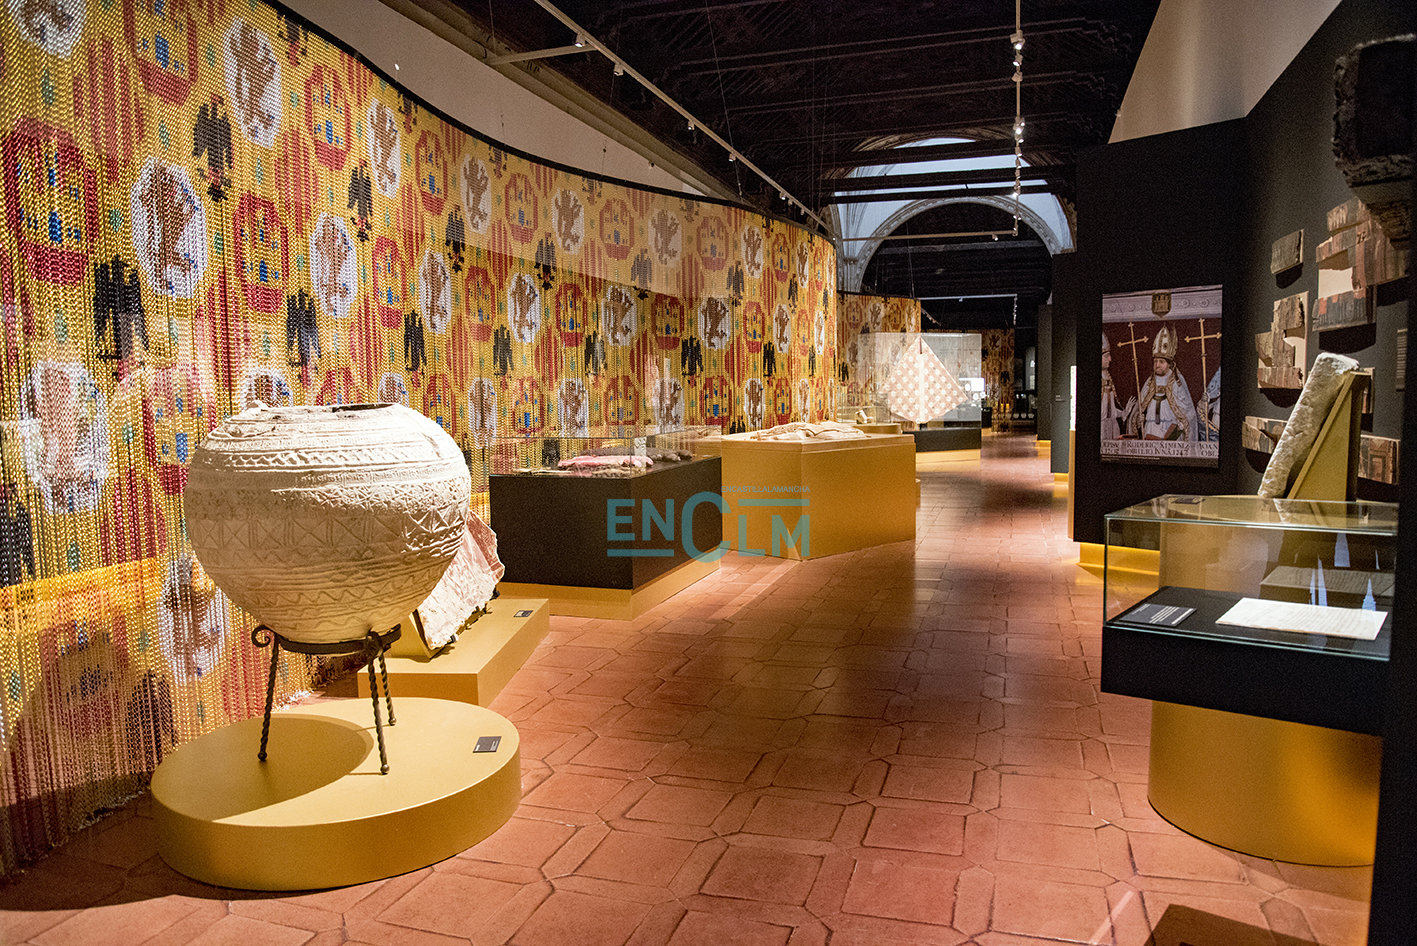 La exposición está situada en el crucero superior del Museo Santa Cruz, en Toledo. Foto: Rebeca Arango.